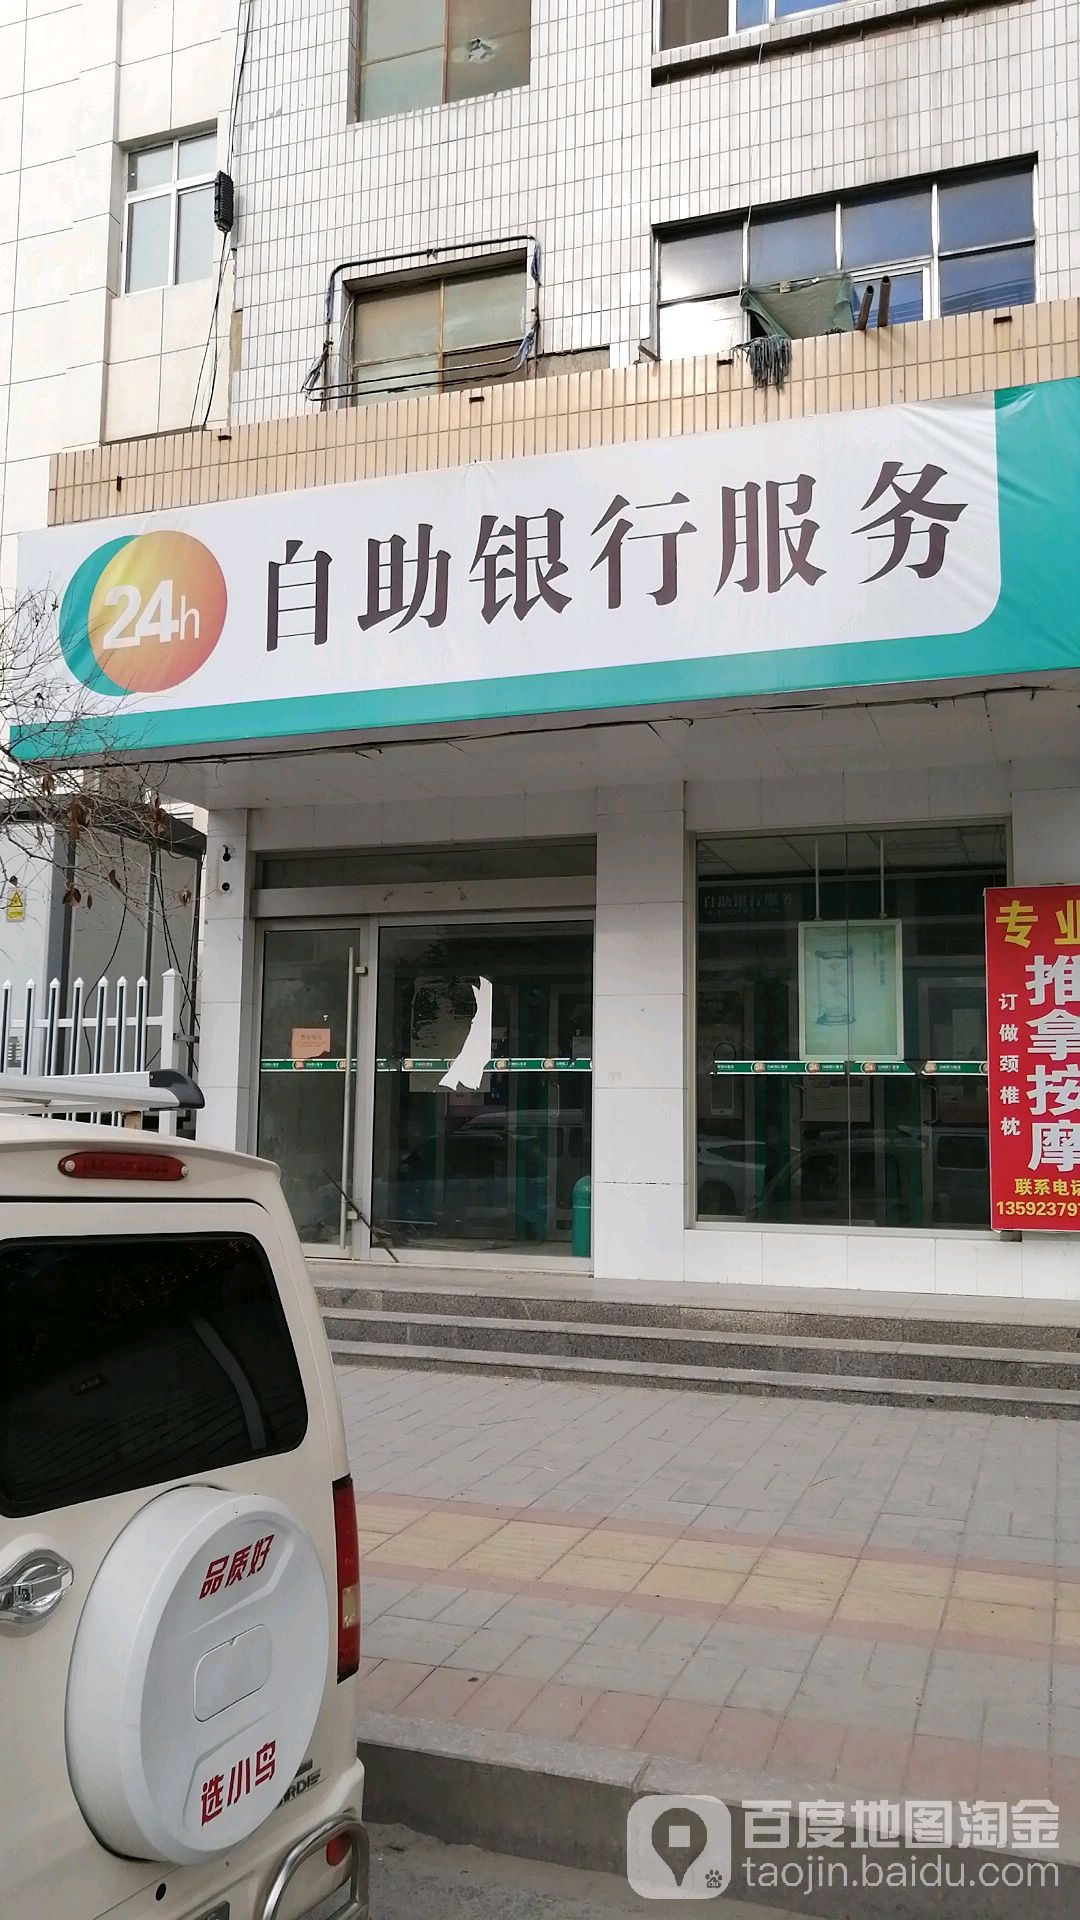 中國農業銀行24小時自助銀行(民權縣支行)